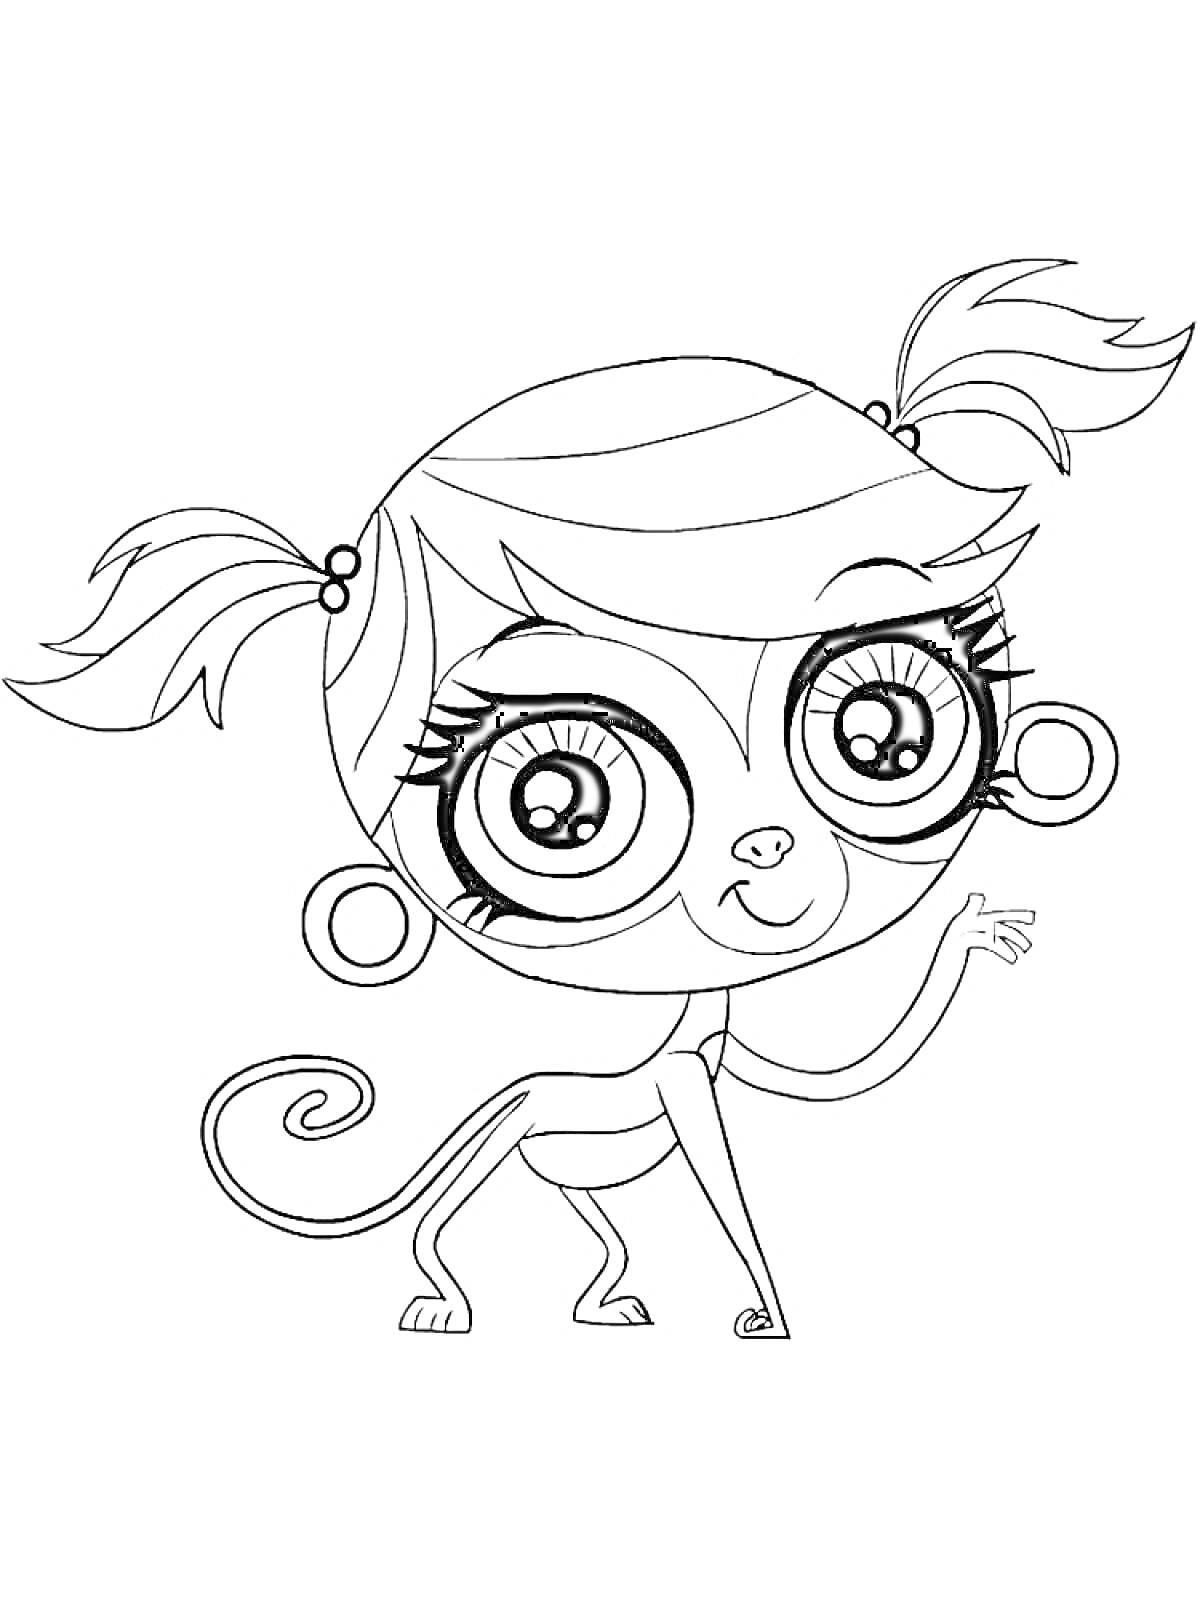 Раскраска Обезьянка с хвостом и большими глазами из Маленького Зоомагазина